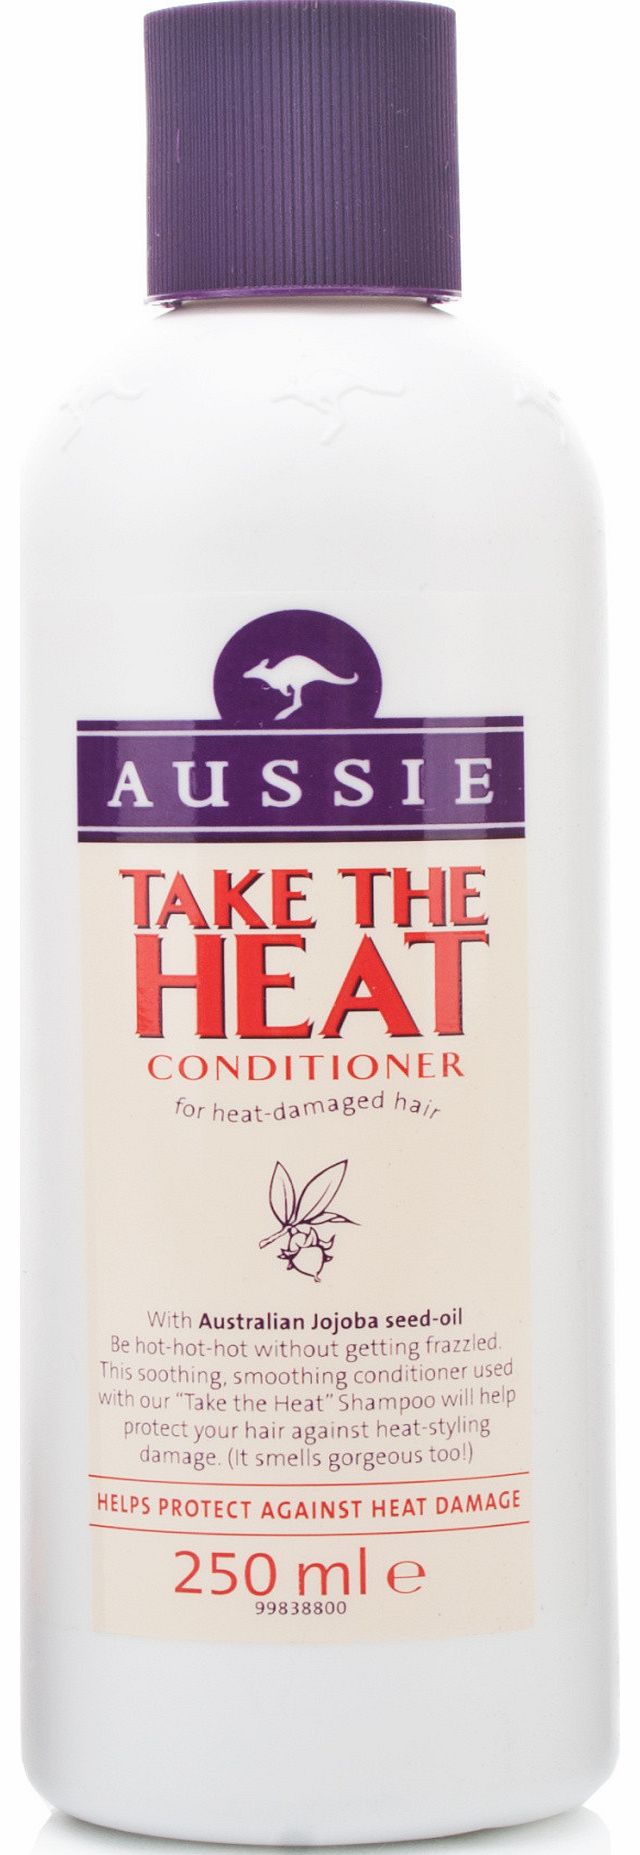 Aussie Take The Heat Conditioner